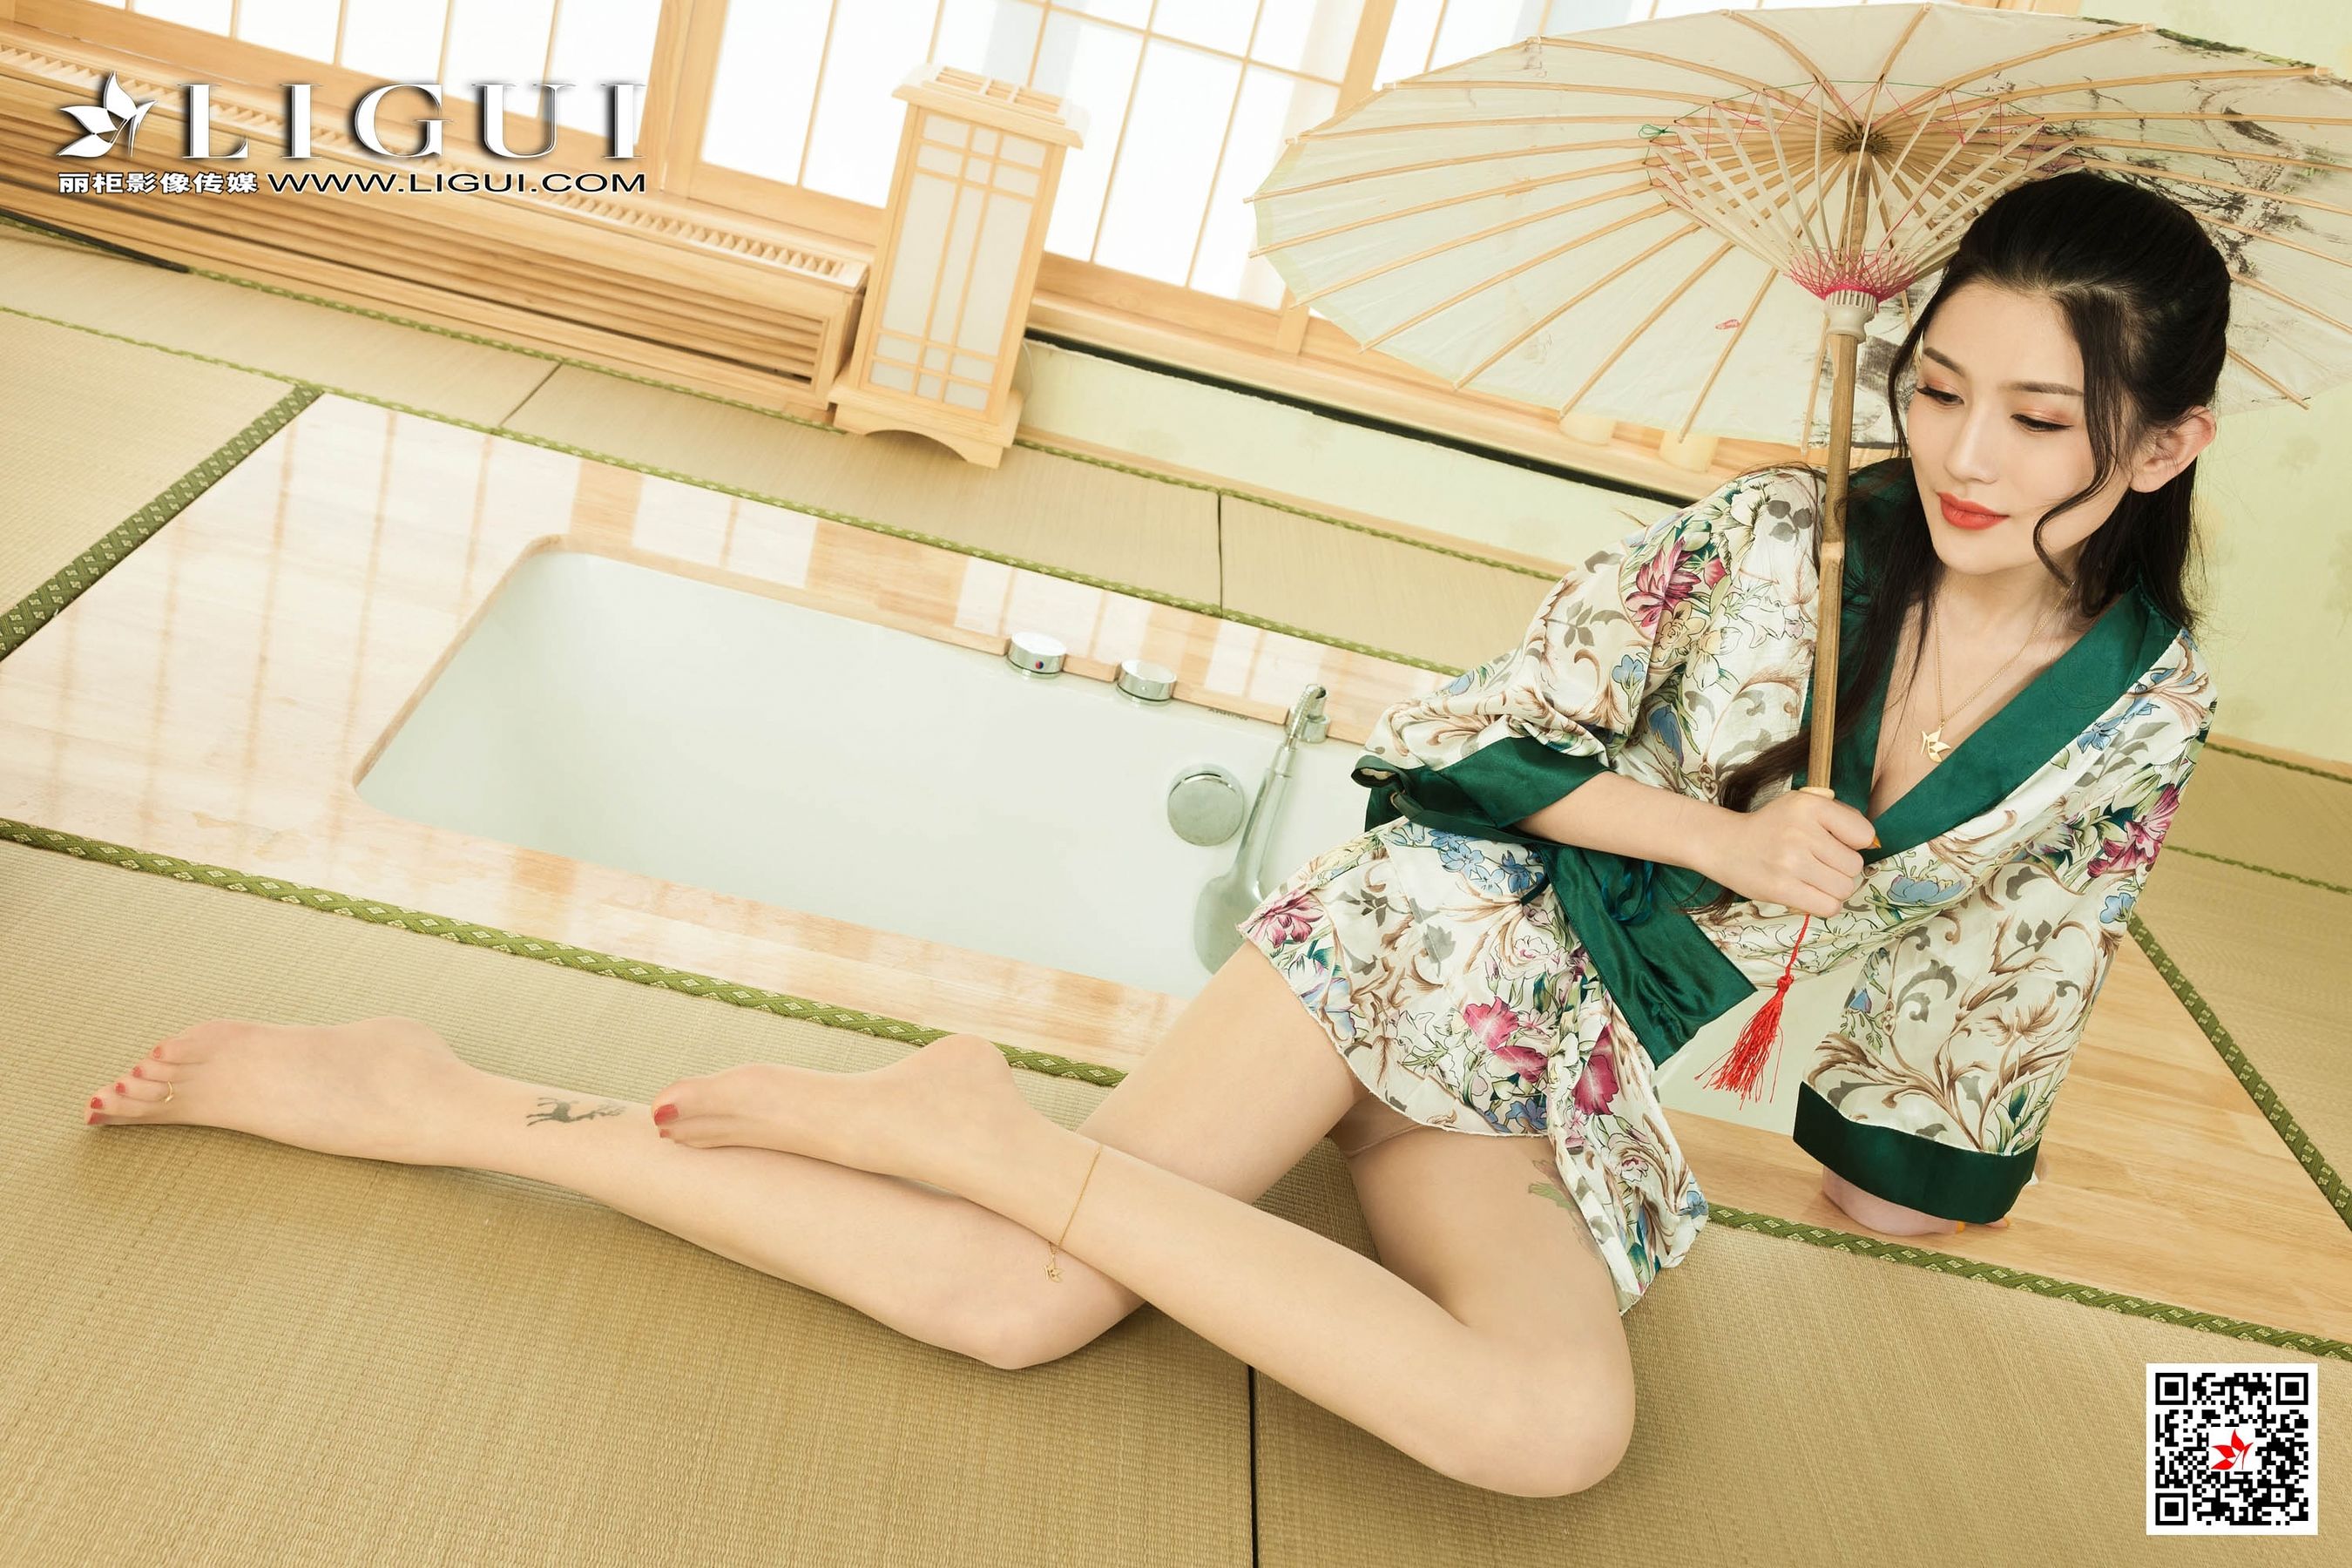 [柜 liGUI] Model sweet “kimono pajamas” photo set